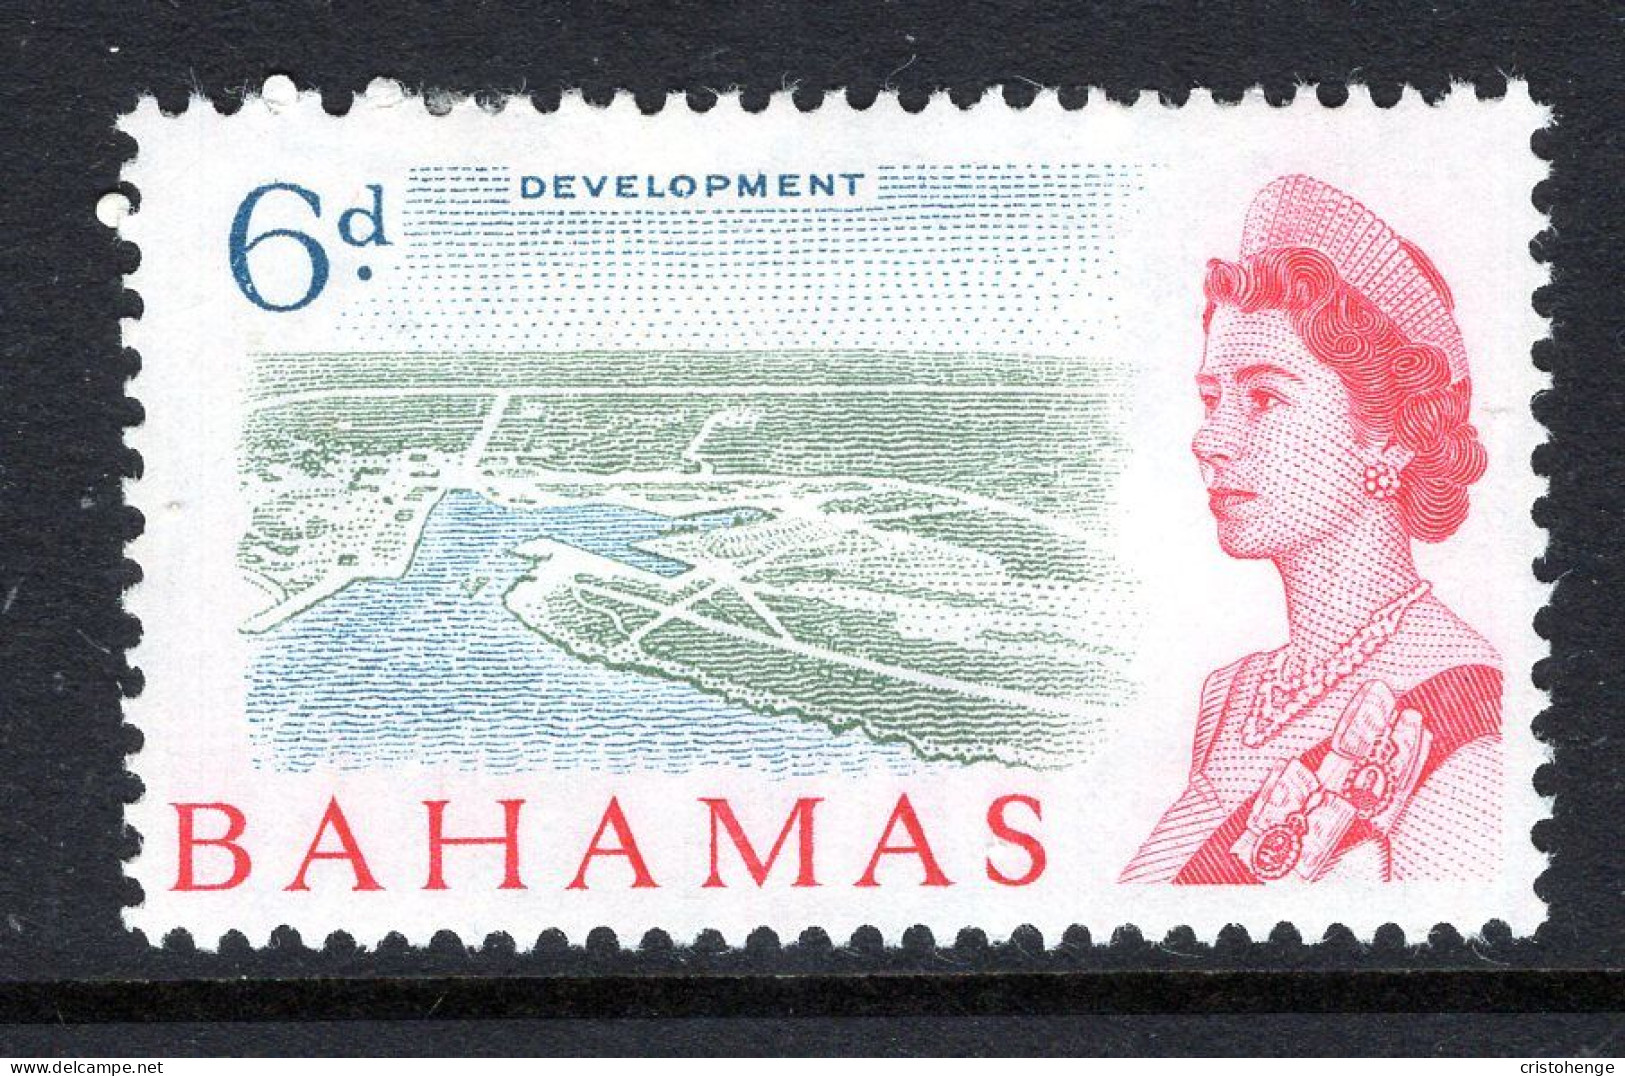 Bahamas 1965 Pictorials - 6d Development HM (SG 253) - 1963-1973 Autonomie Interne